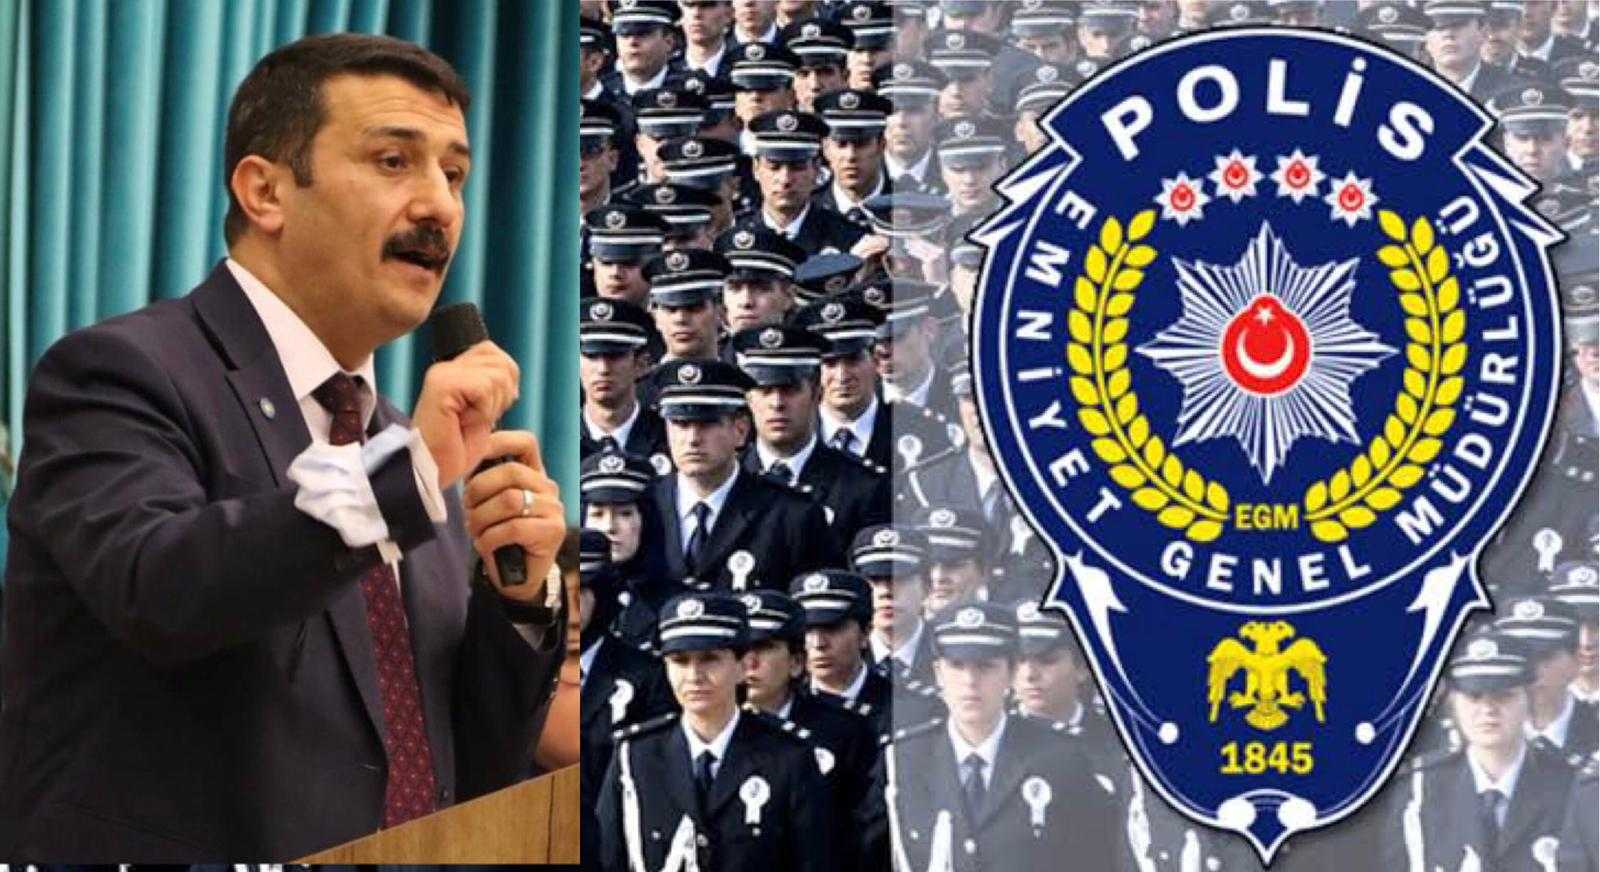 İYİ Parti Bursadan polislerin özlük hakkı için İçişleri Bakanlığına seslendi